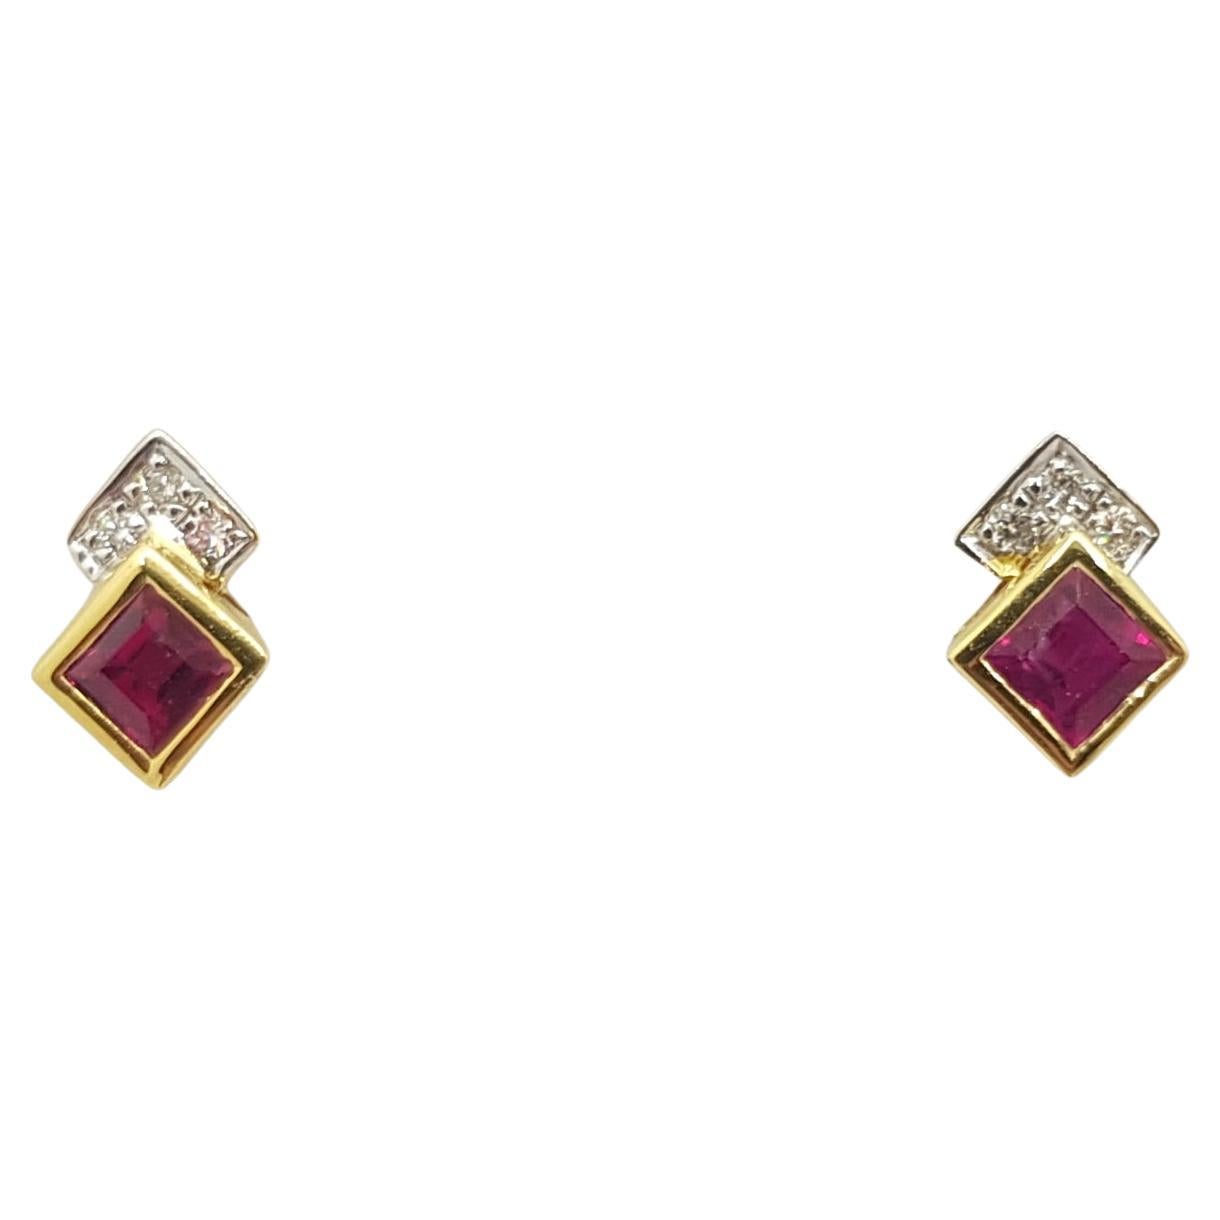 Ohrringe mit Rubin und Diamanten in 18 Karat Goldfassungen gefasst